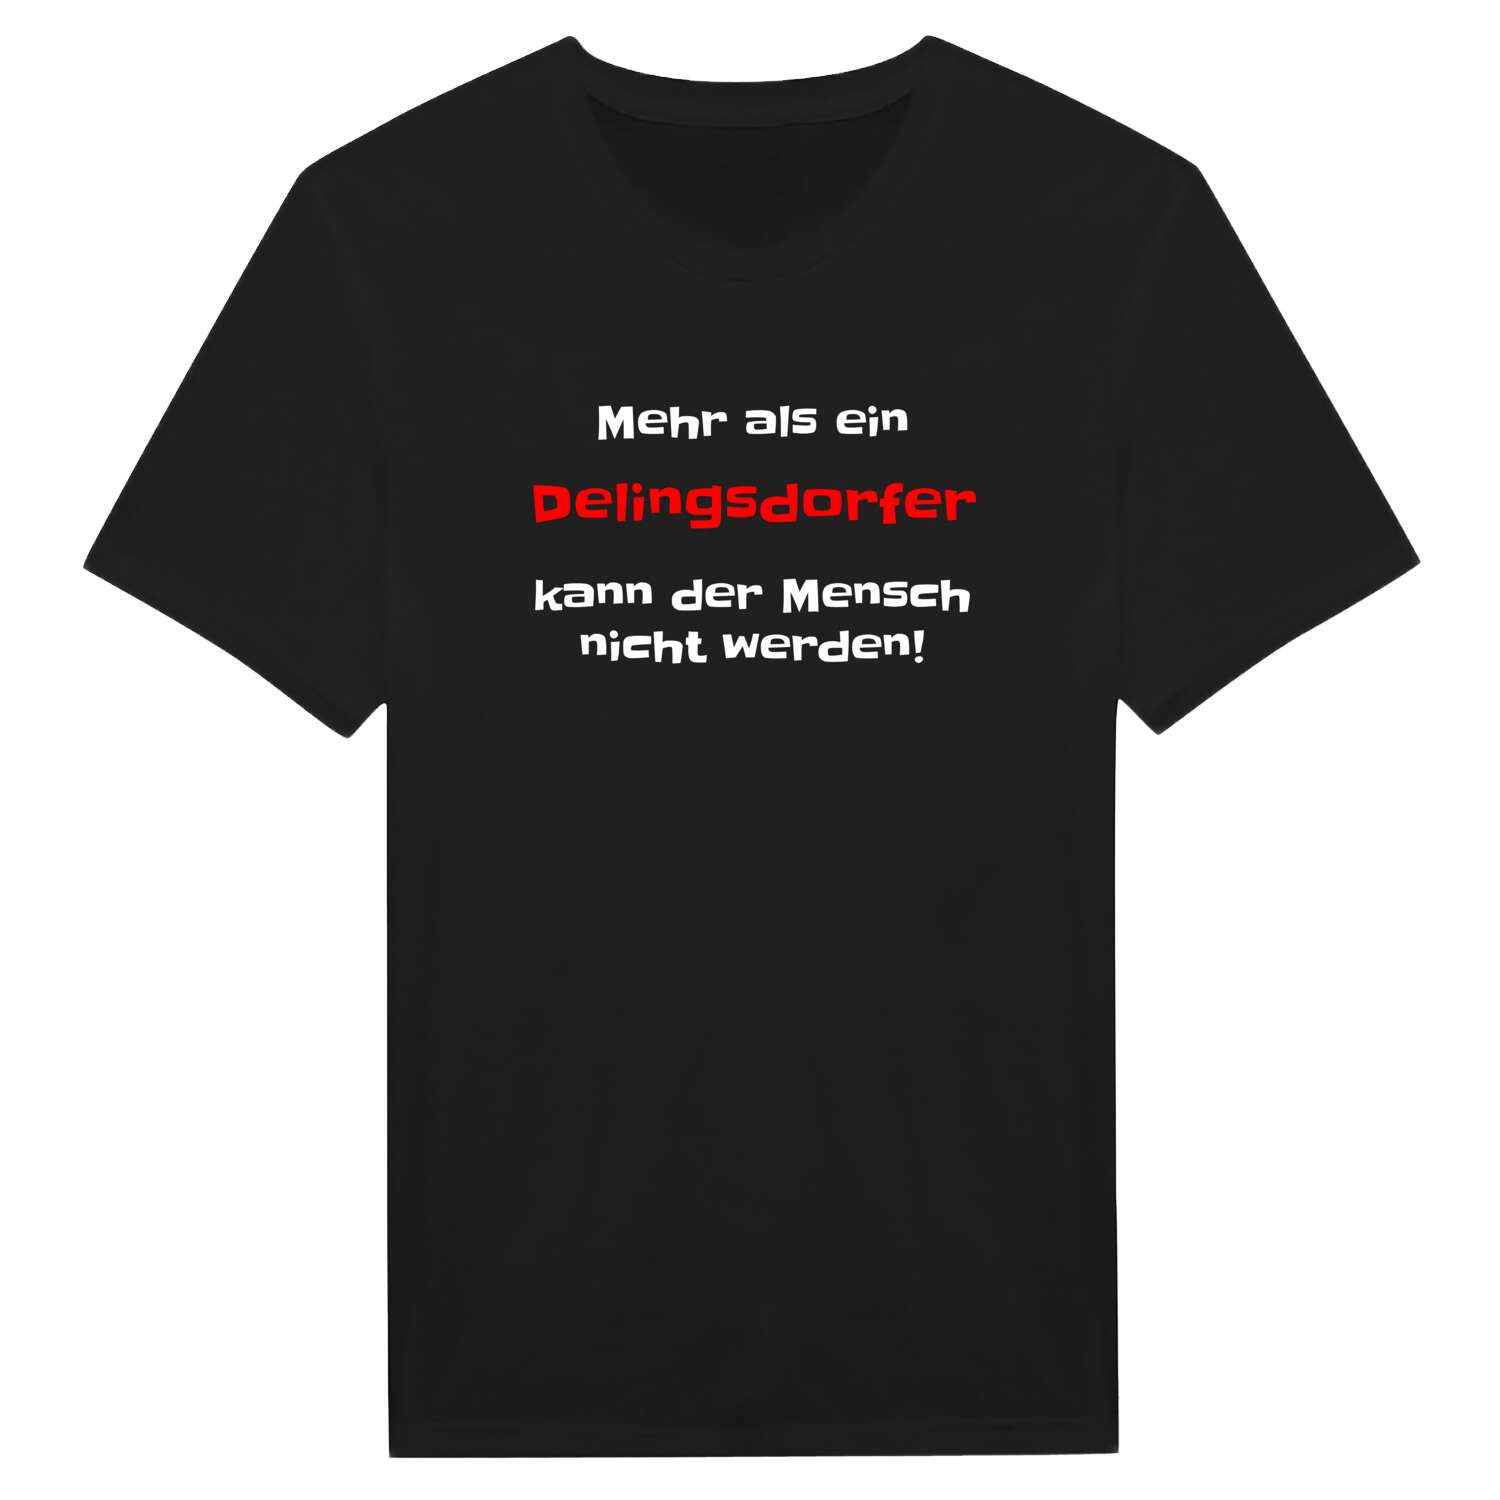 Delingsdorf T-Shirt »Mehr als ein«